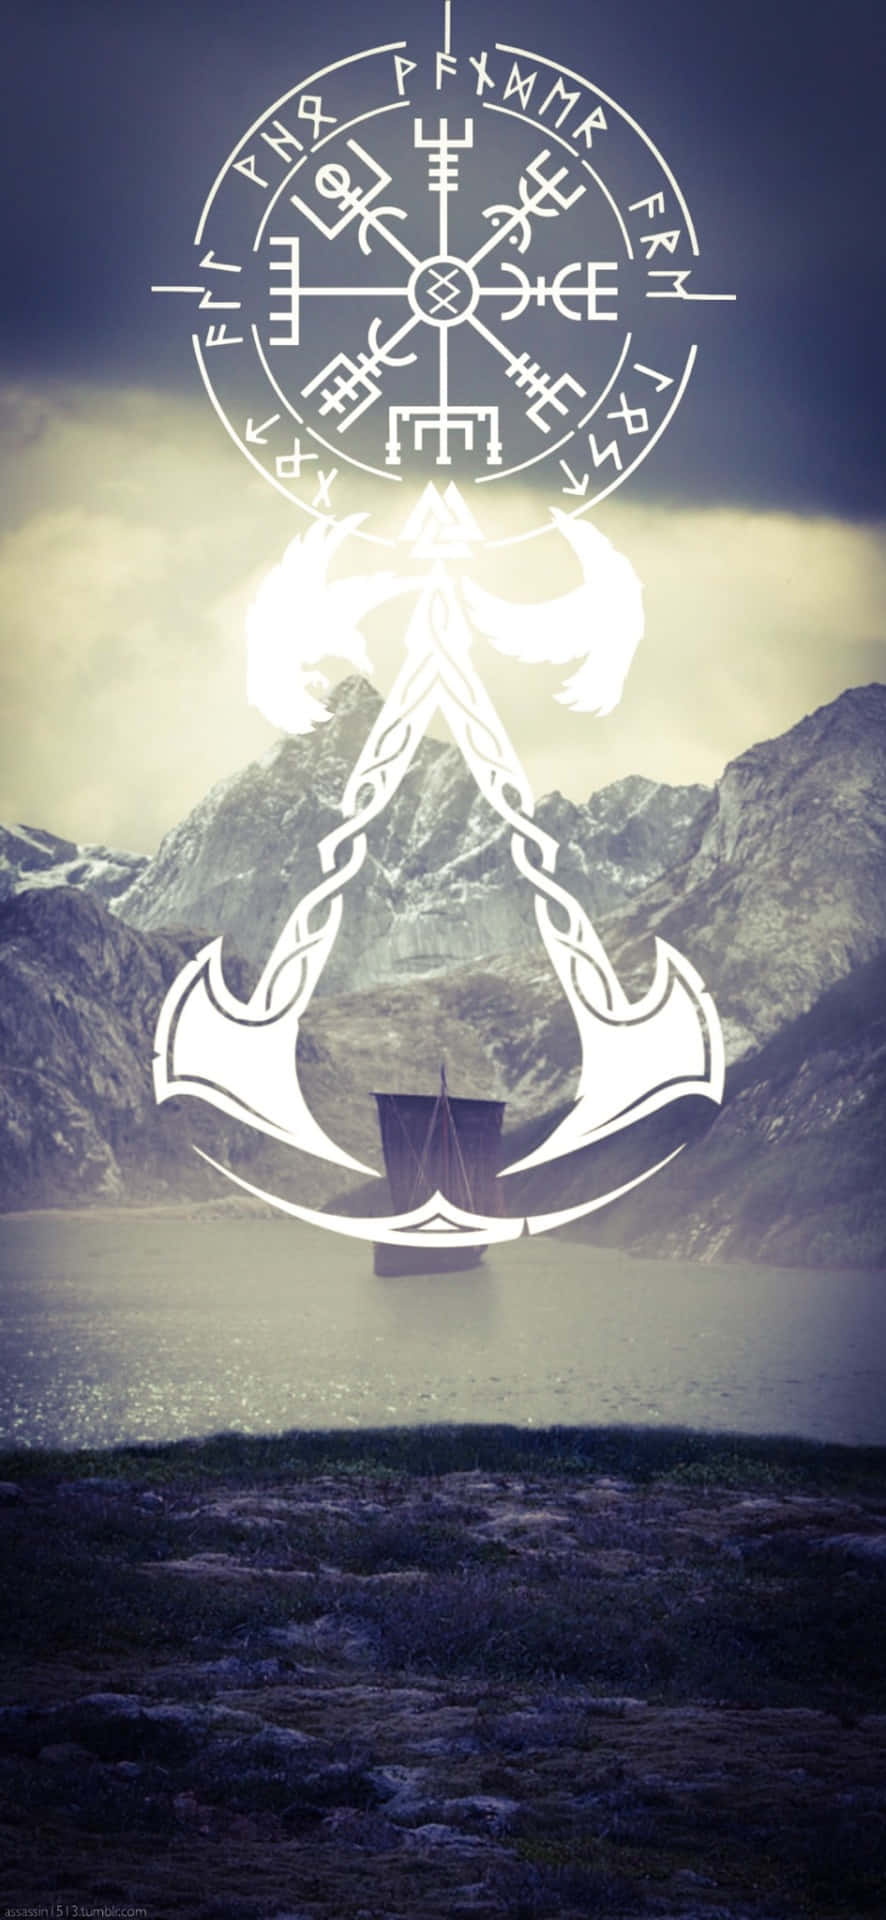 Iphonex Bakgrund Med Assassin's Creed Valhalla-logotypen.